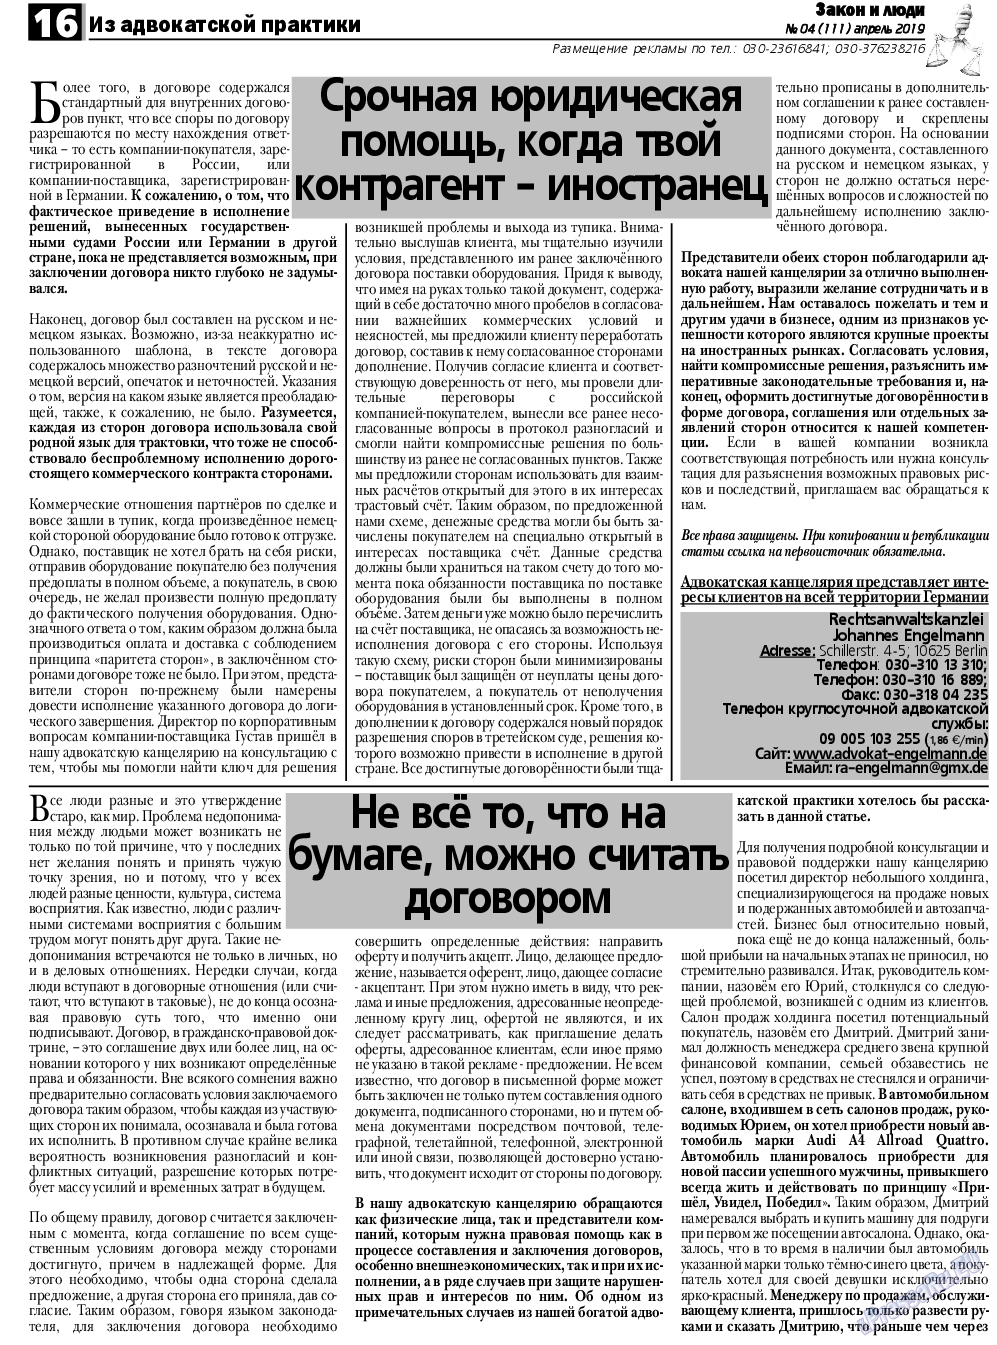 Закон и люди, газета. 2019 №4 стр.16